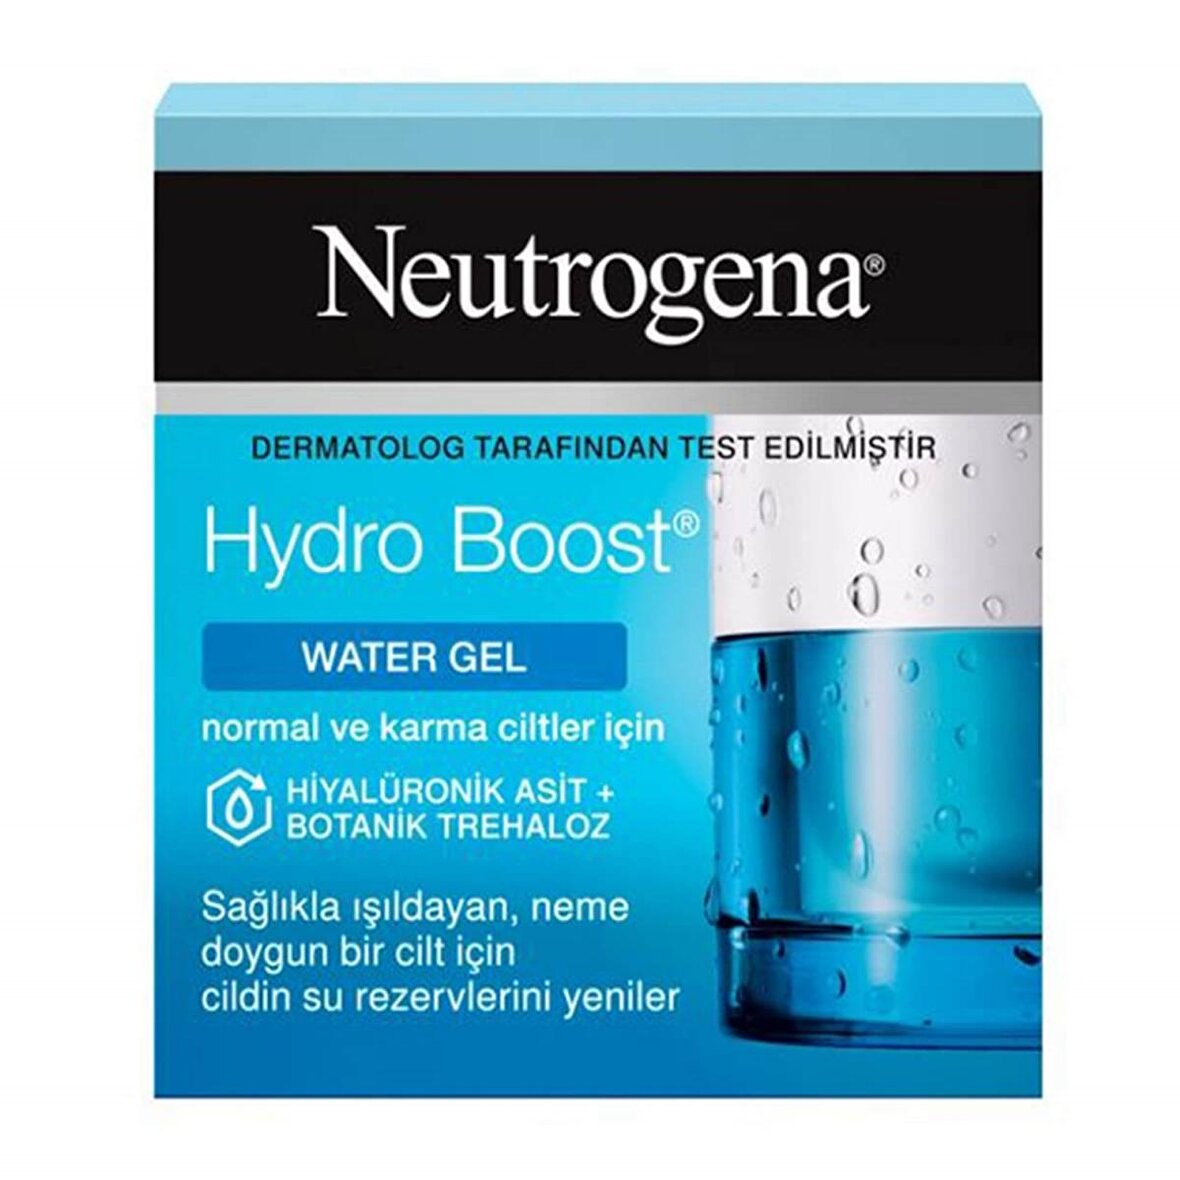 Neutrogena Hydro Boost Nemlendirici Normal Ciltler Için Vücut Kremi 50 Ml Fiyatları Ve Modelleri 7223